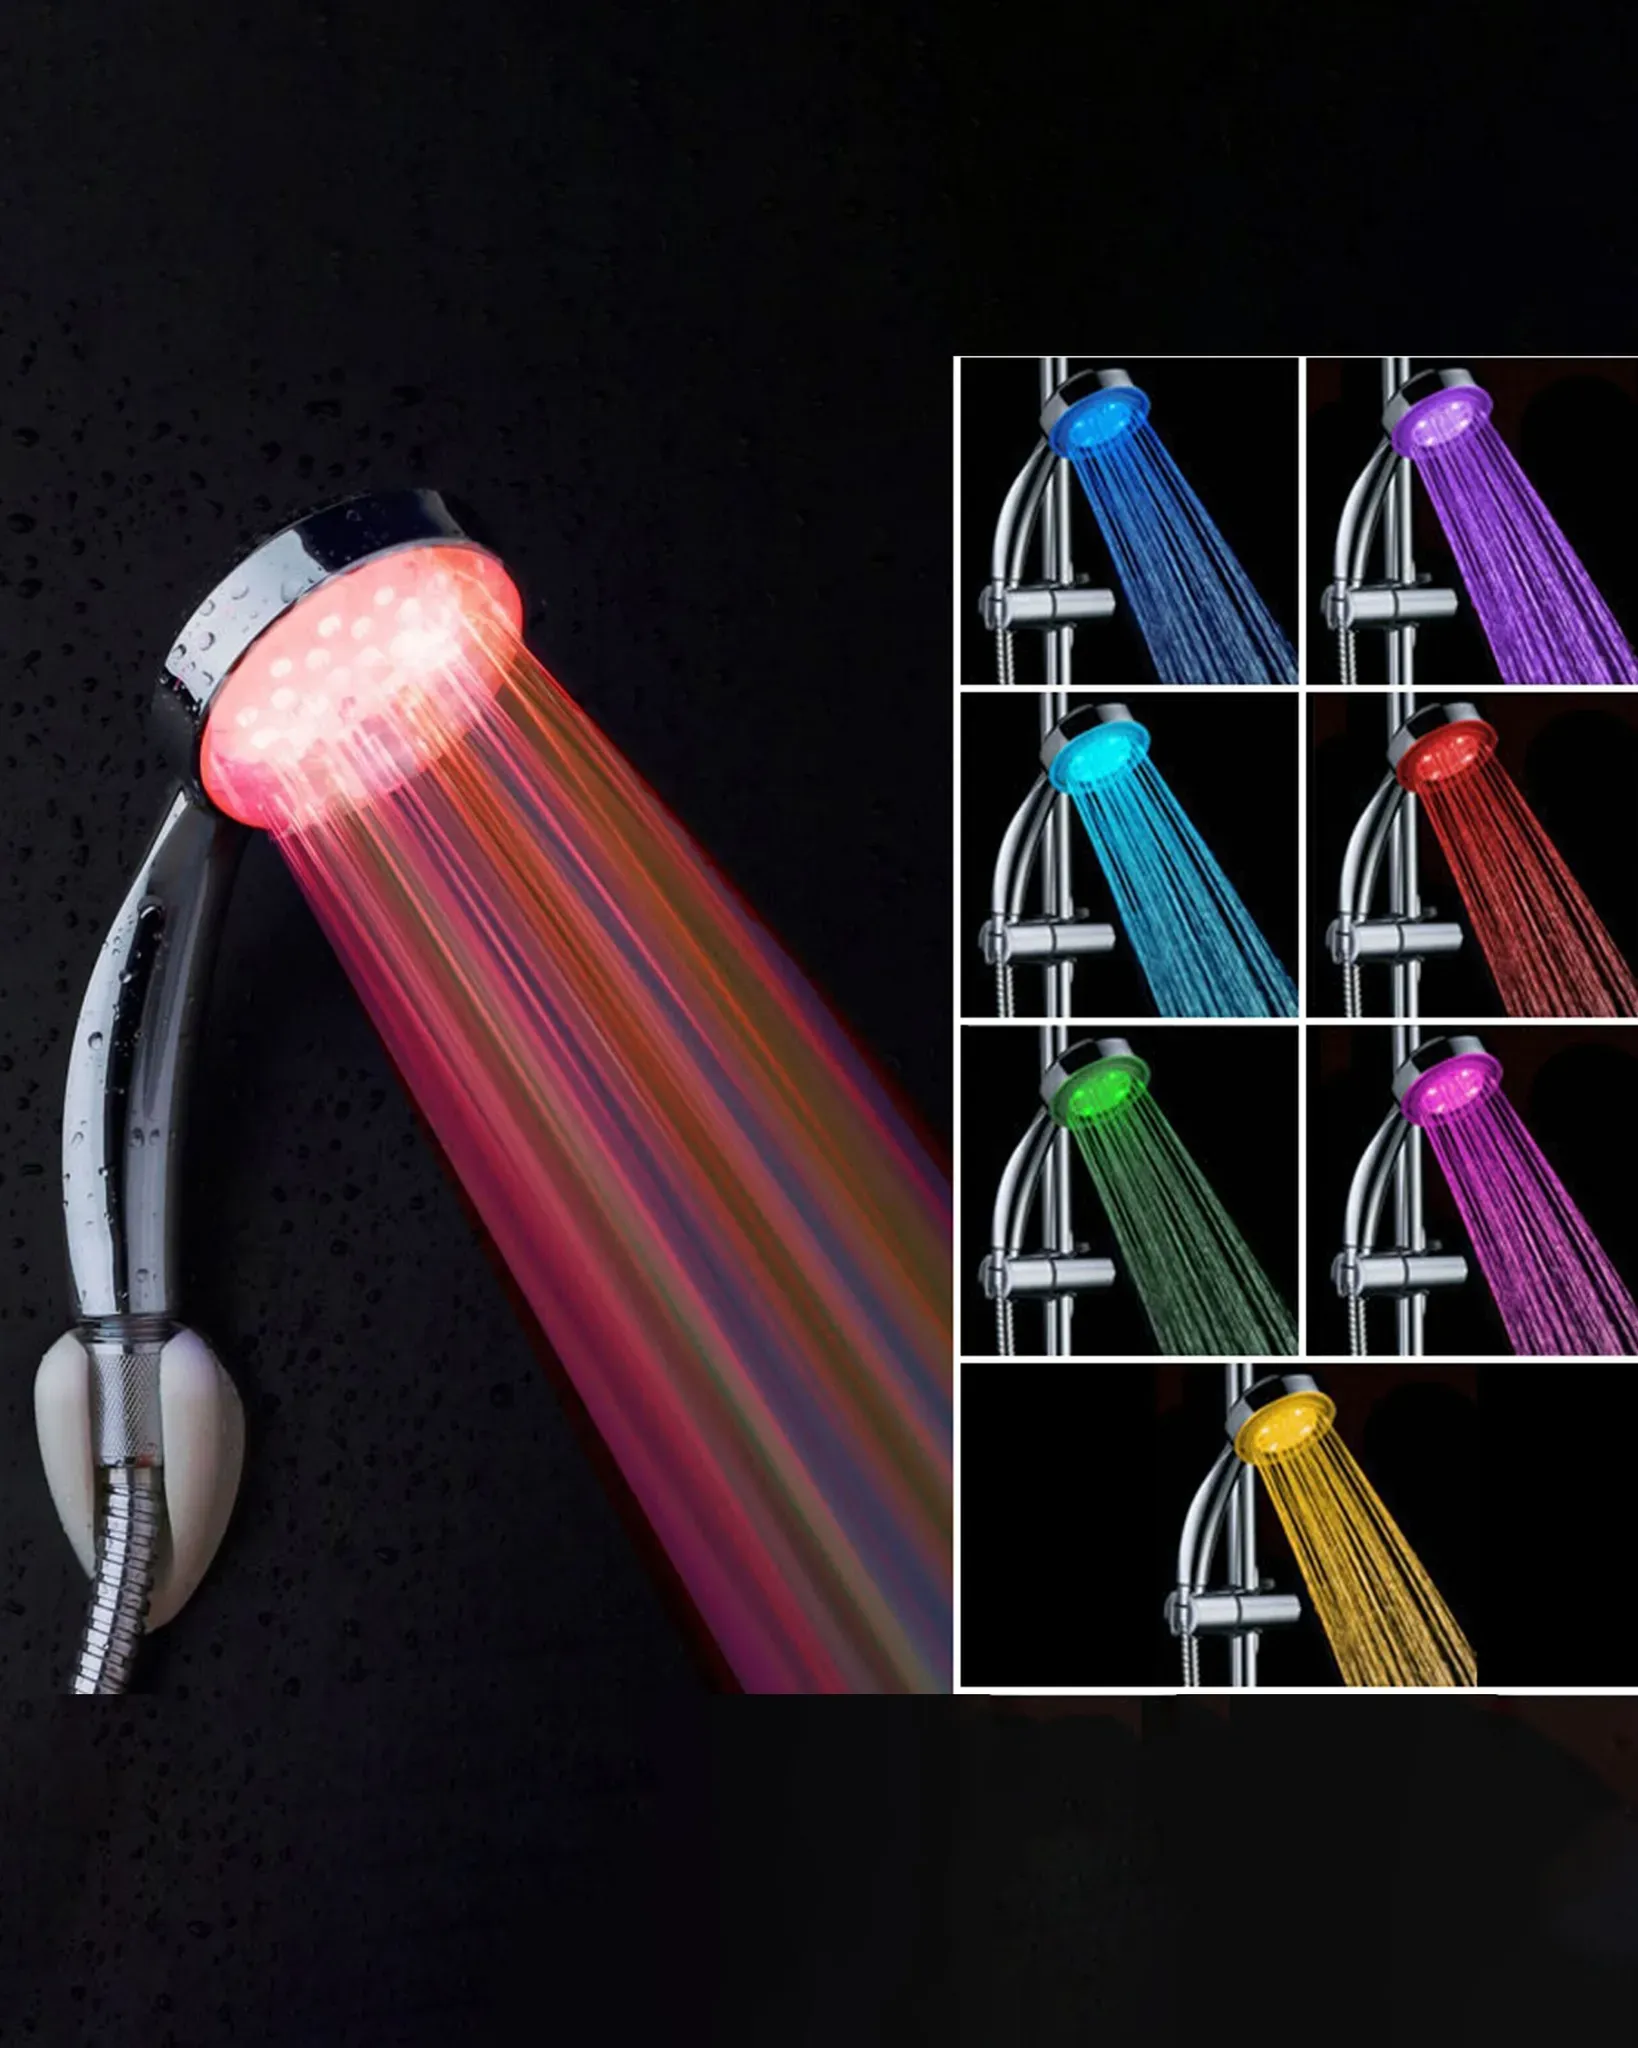 Duschkopf LED Farbwechsel RAINBOW